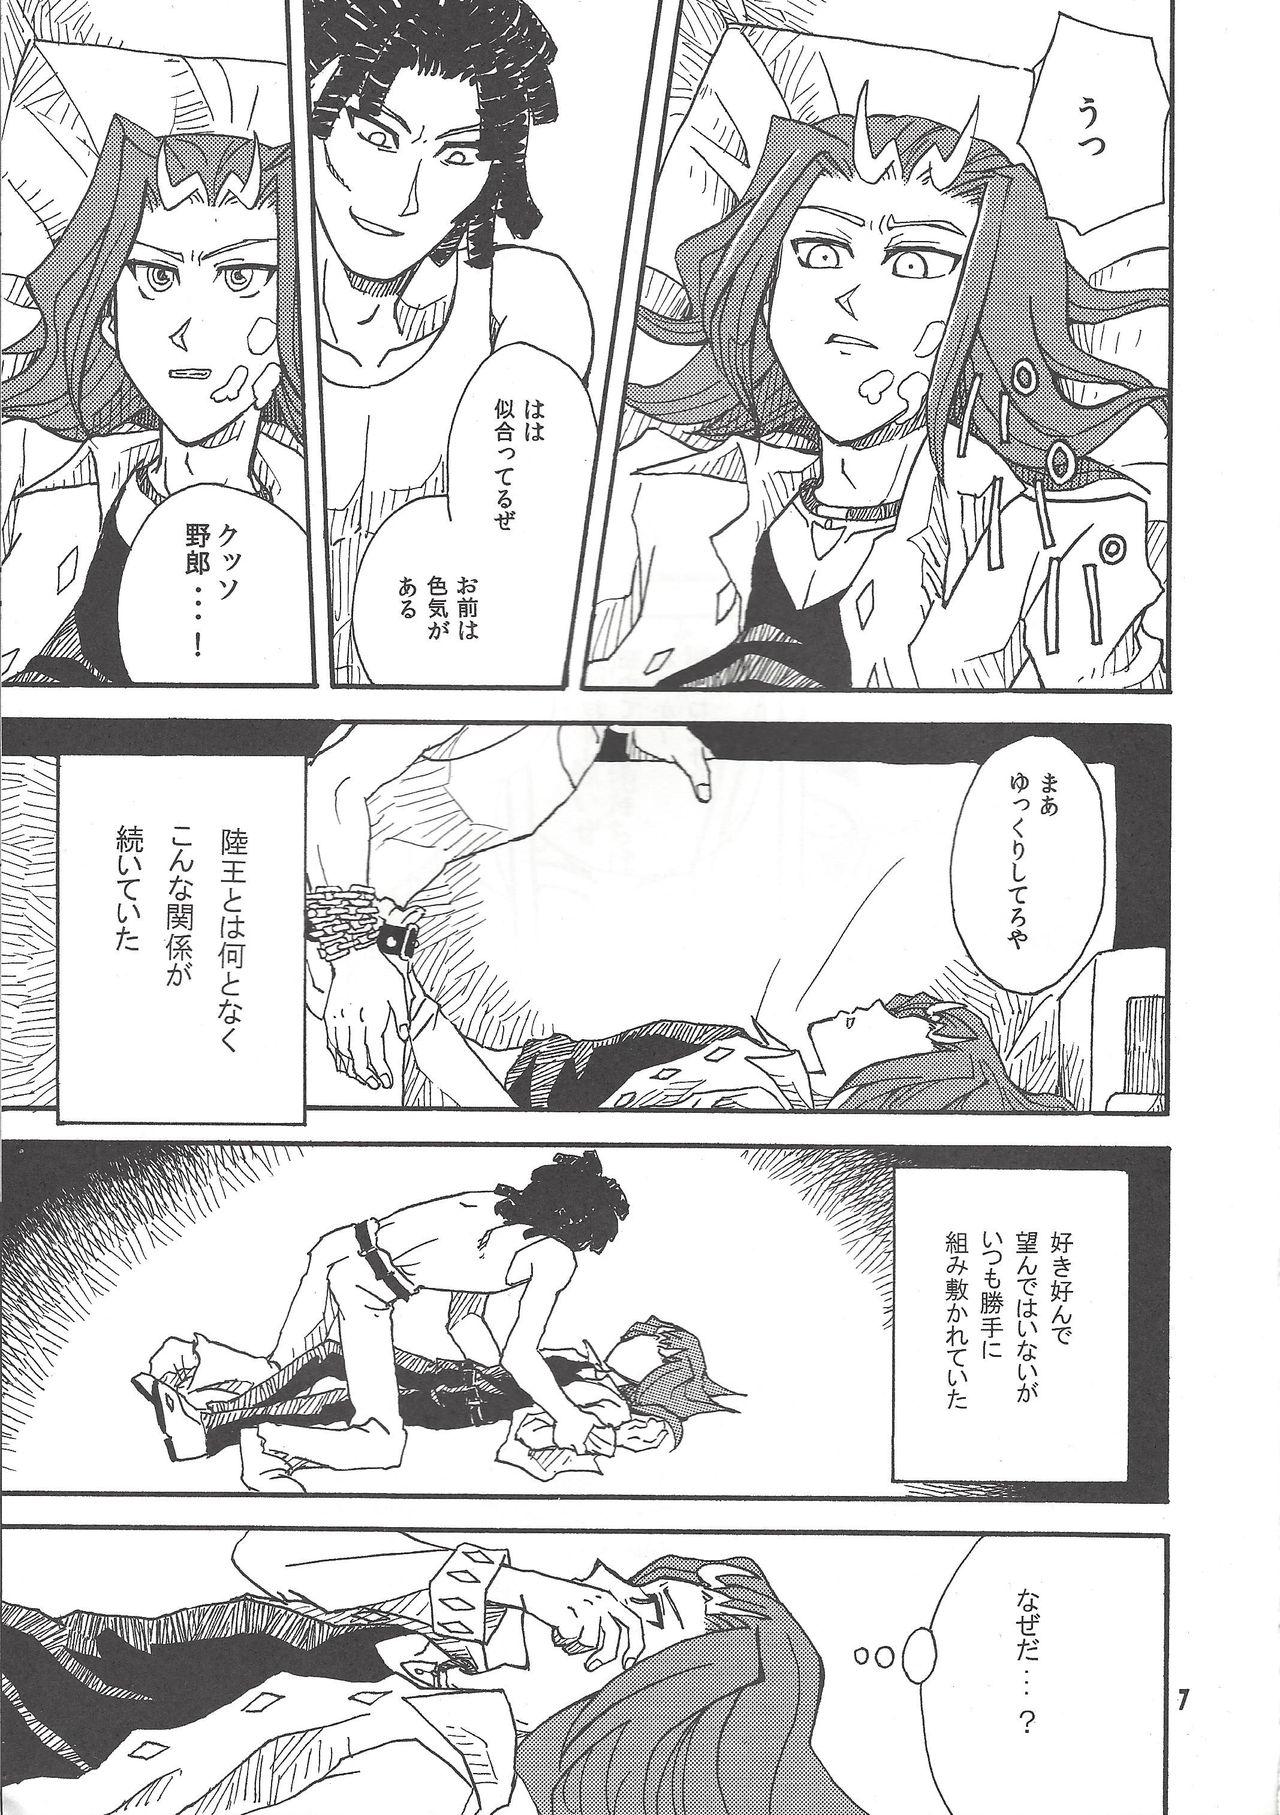 Cheerleader Leviathan no Fukushuu - Yu-gi-oh zexal Transexual - Page 6